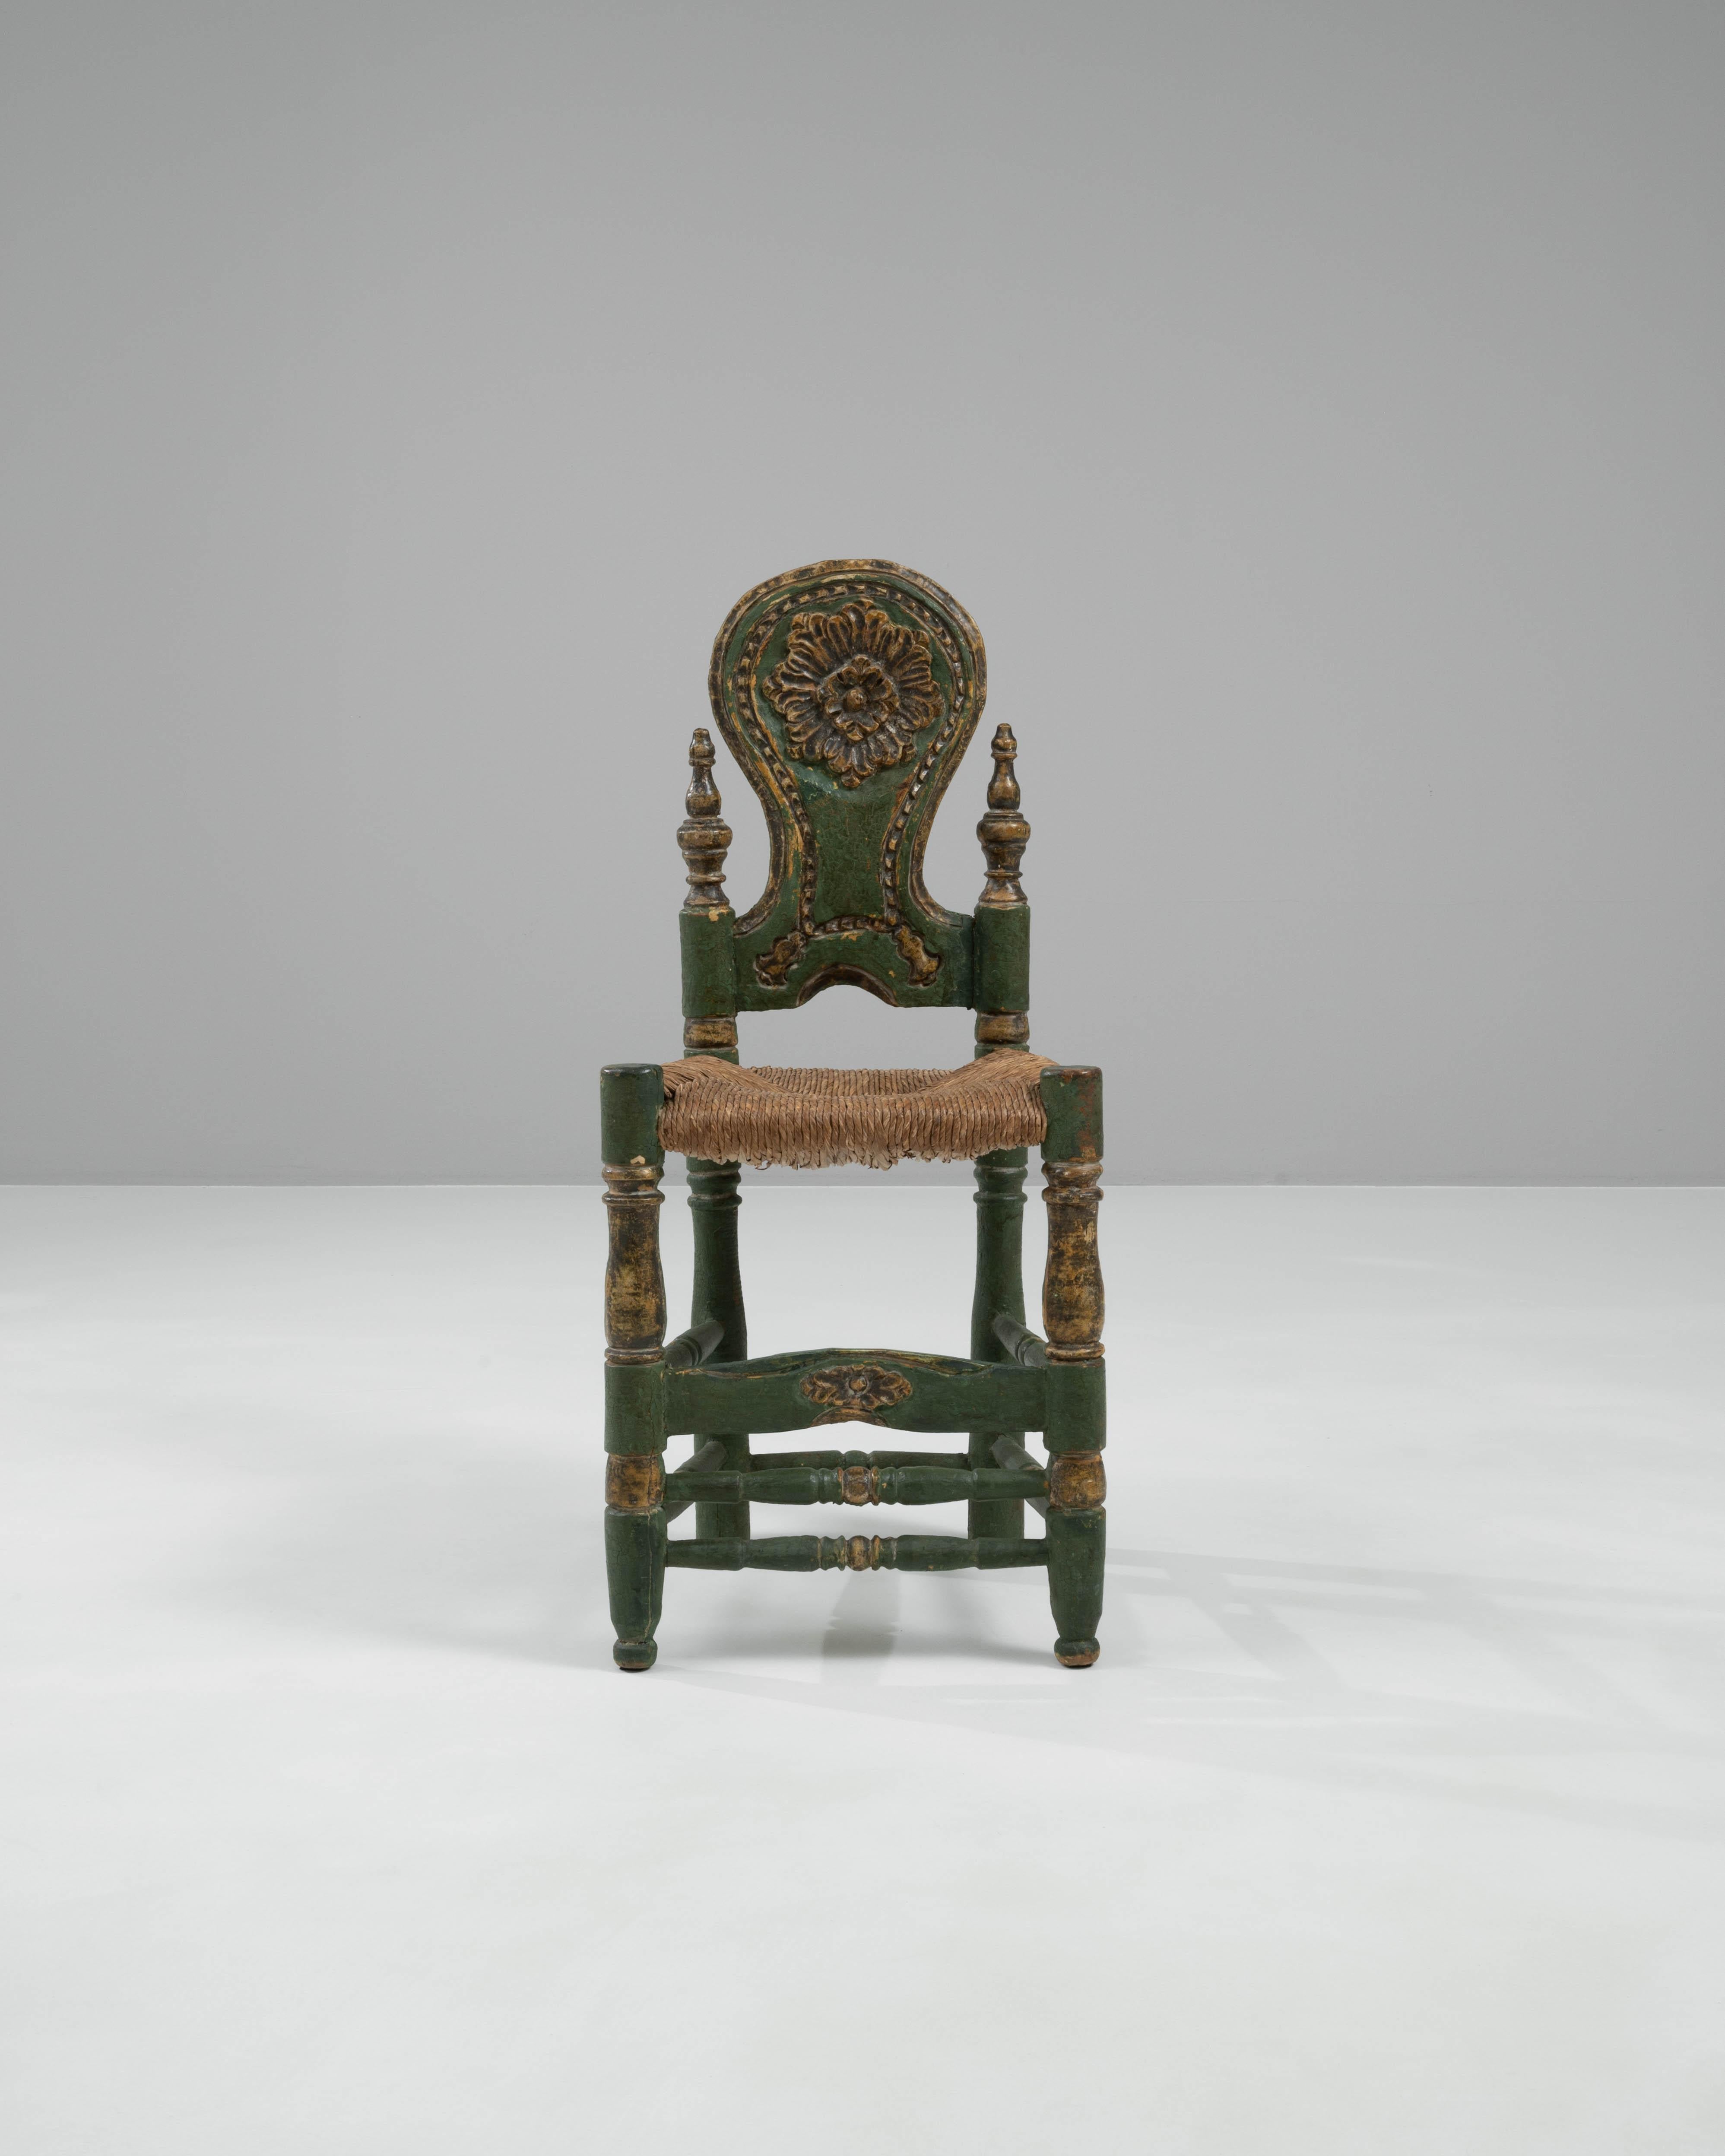 Ajoutez une touche de charme vintage à votre décor avec cette chaise en bois italienne du XXe siècle. Fabriquée avec le souci du détail, cette chaise présente une finition verte accrocheuse avec une détresse naturelle qui rehausse son aspect